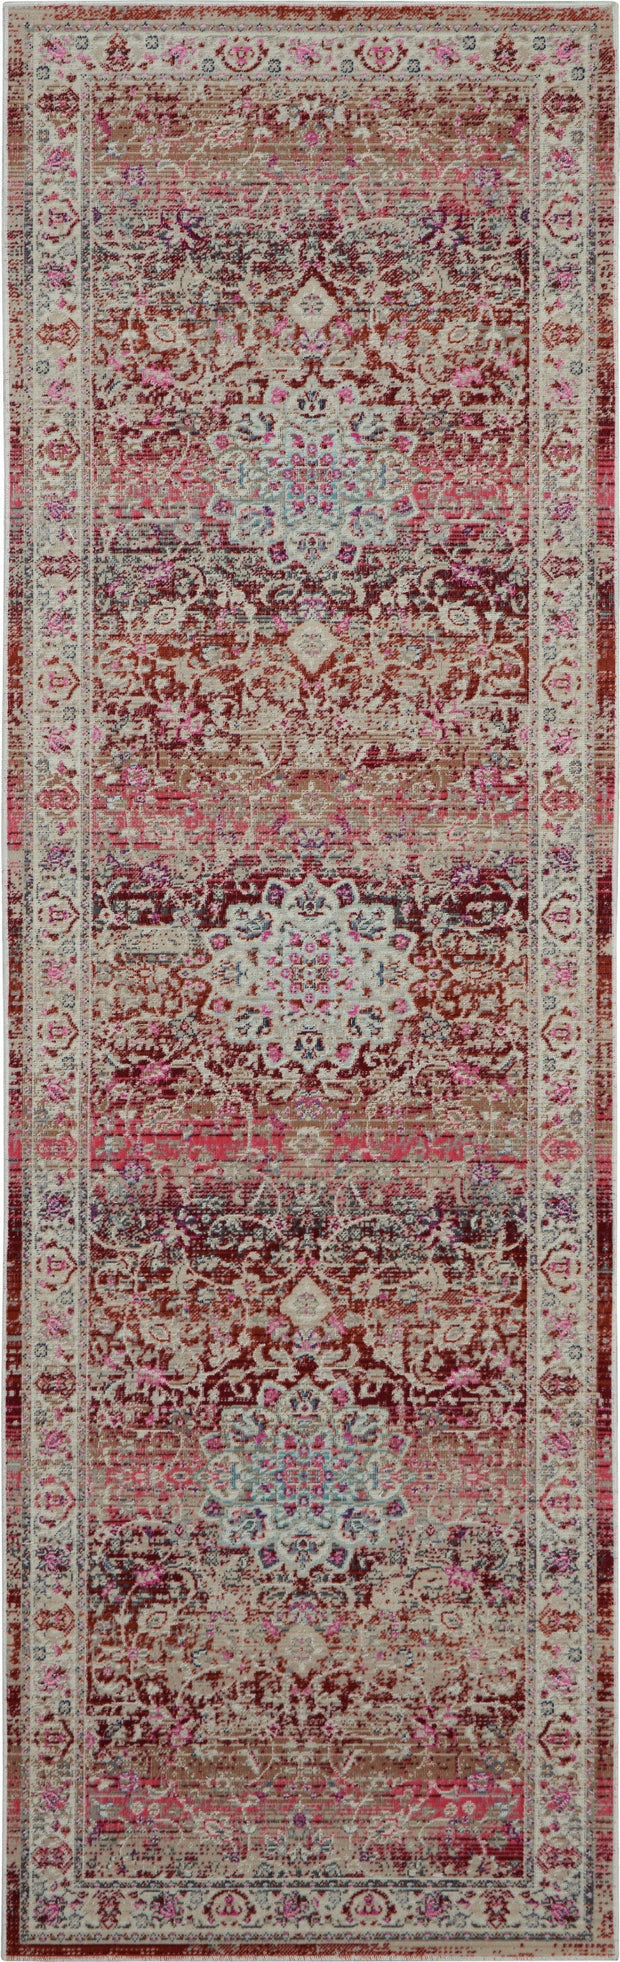 vintage kashan red rug by nourison 99446455154 redo 3